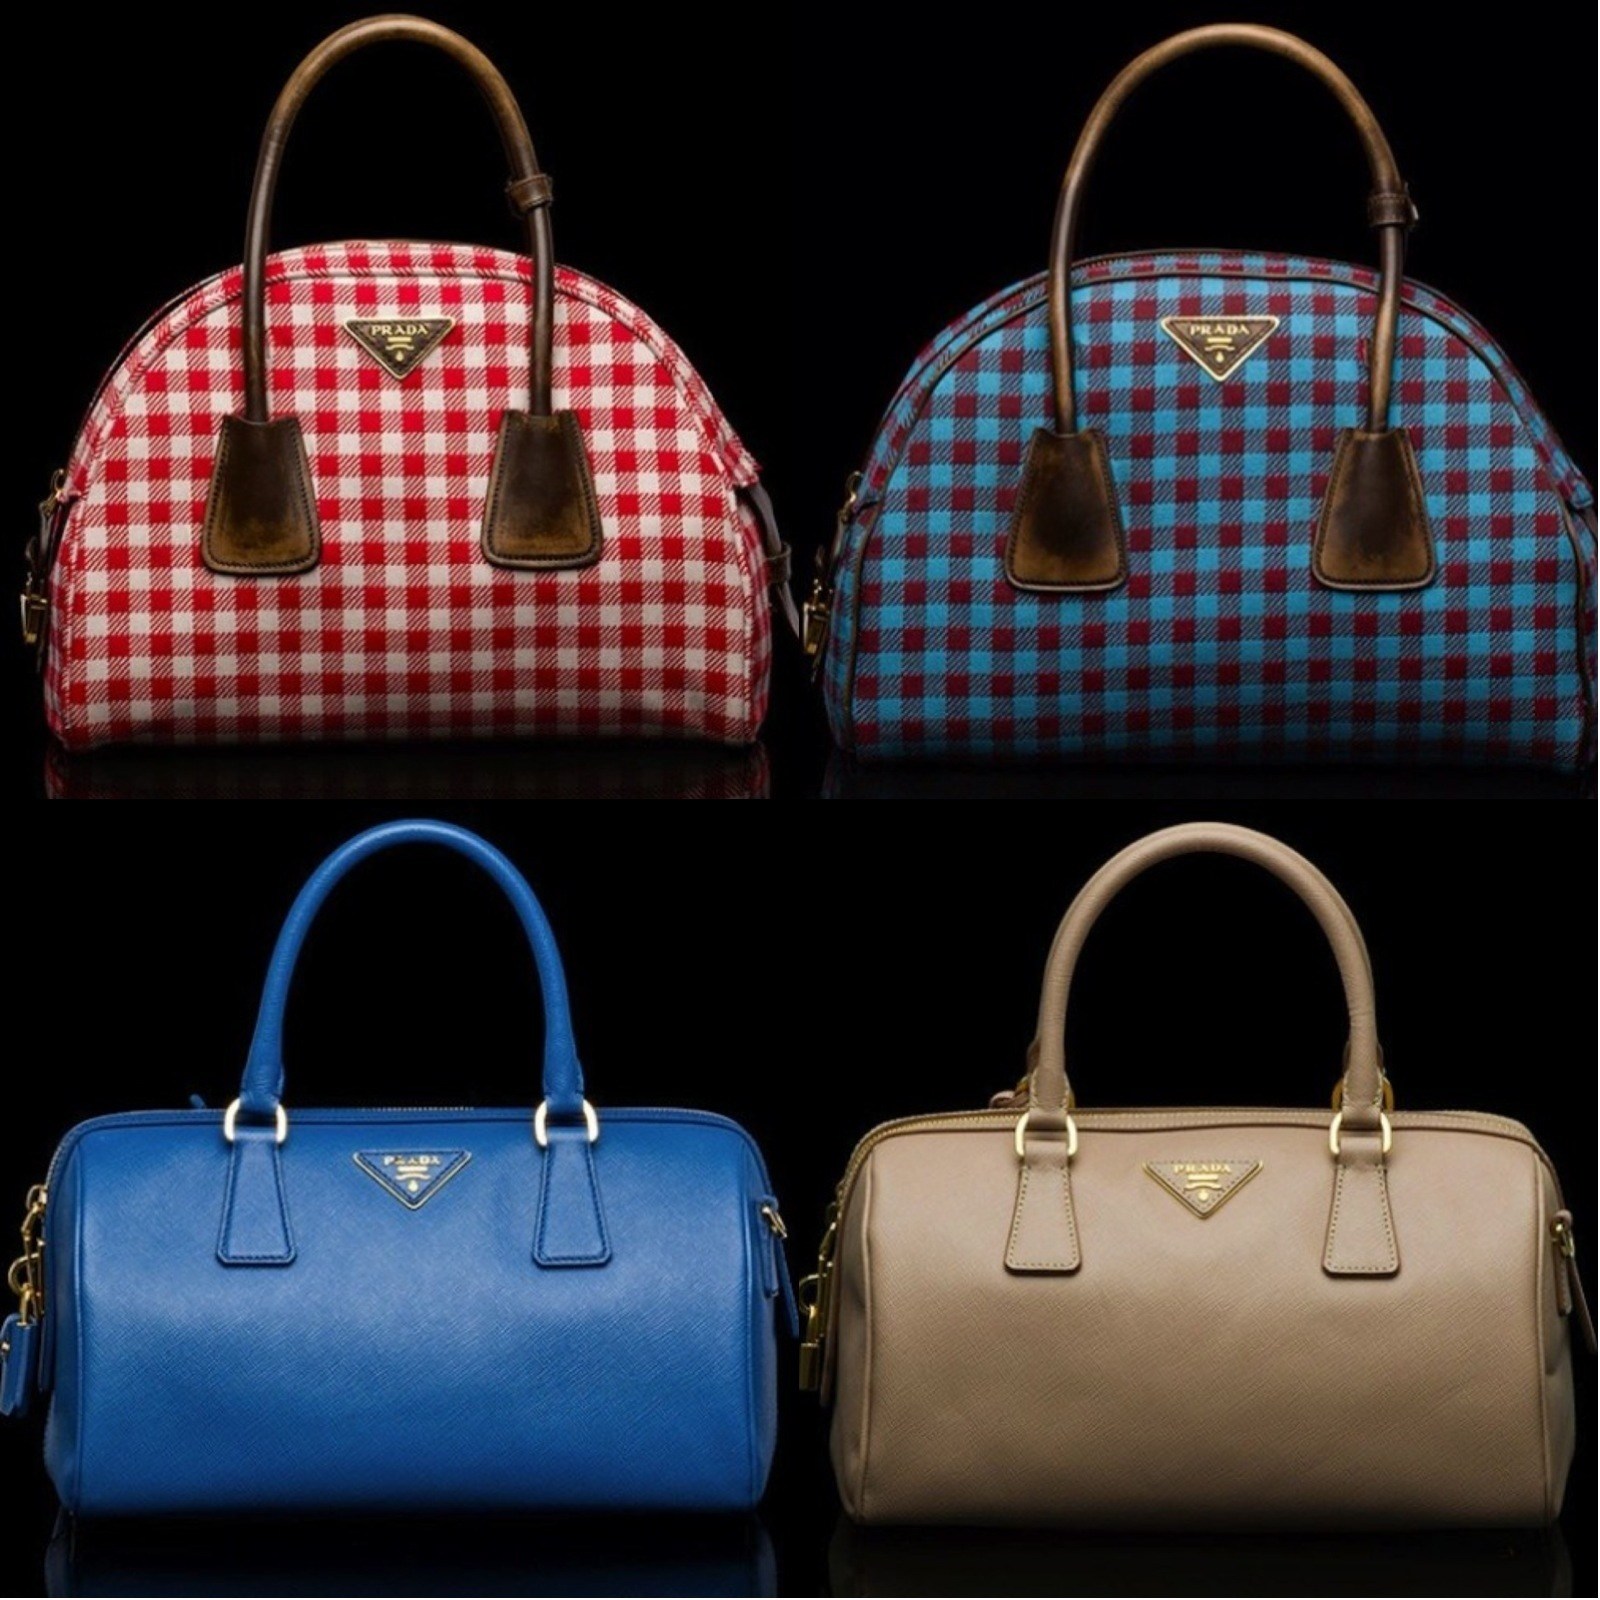 Bags Prada Fall Winter 2013 2014 Collection Handbags Women